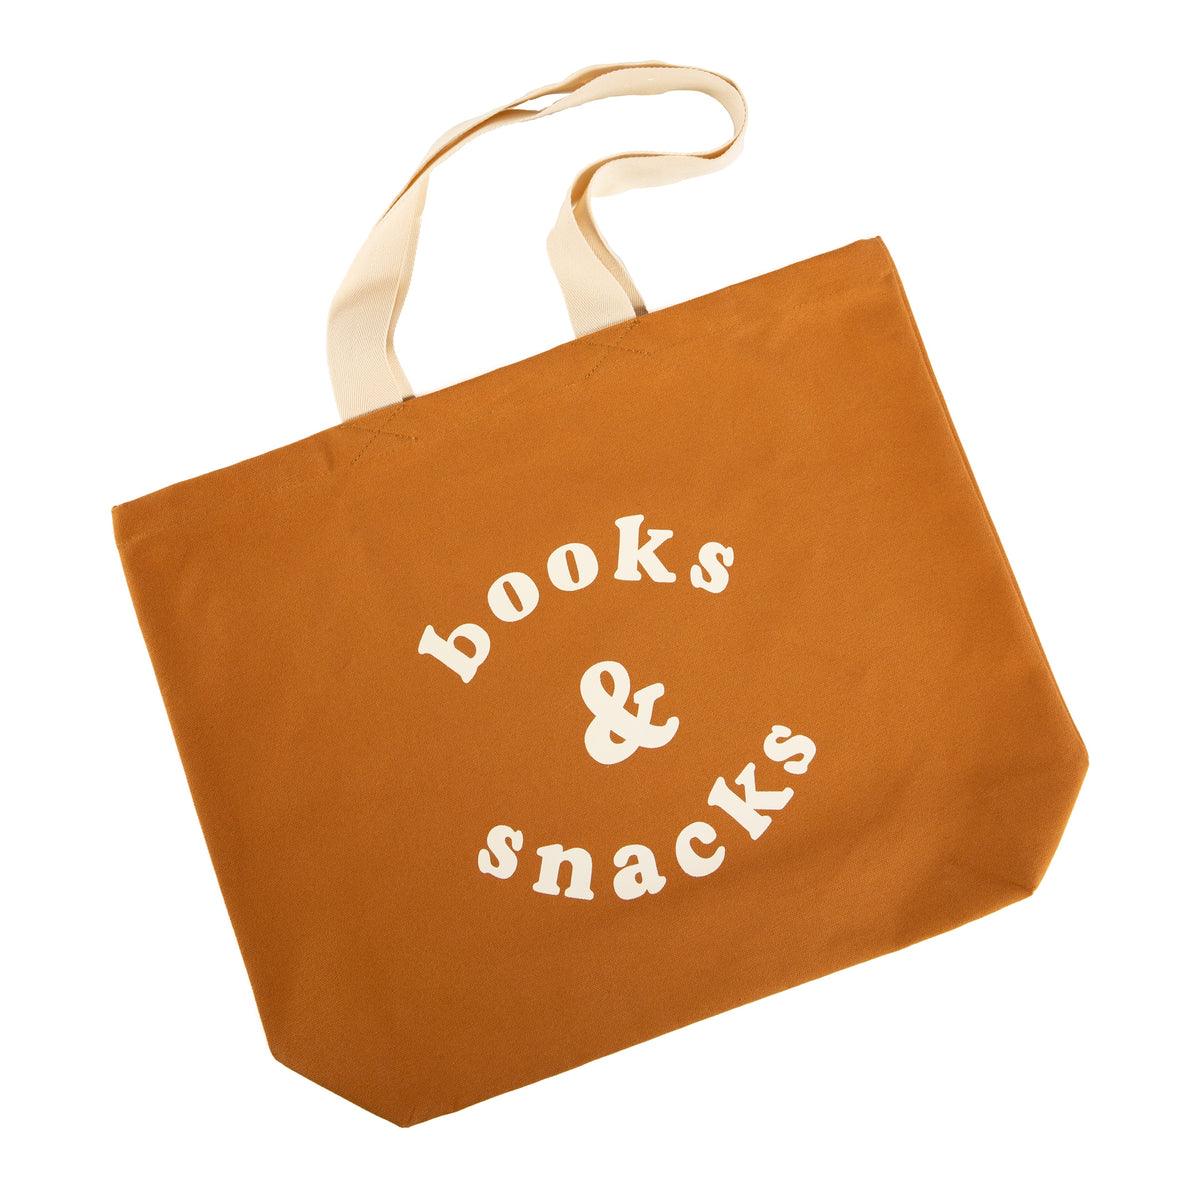 Books and snacks bag - tan